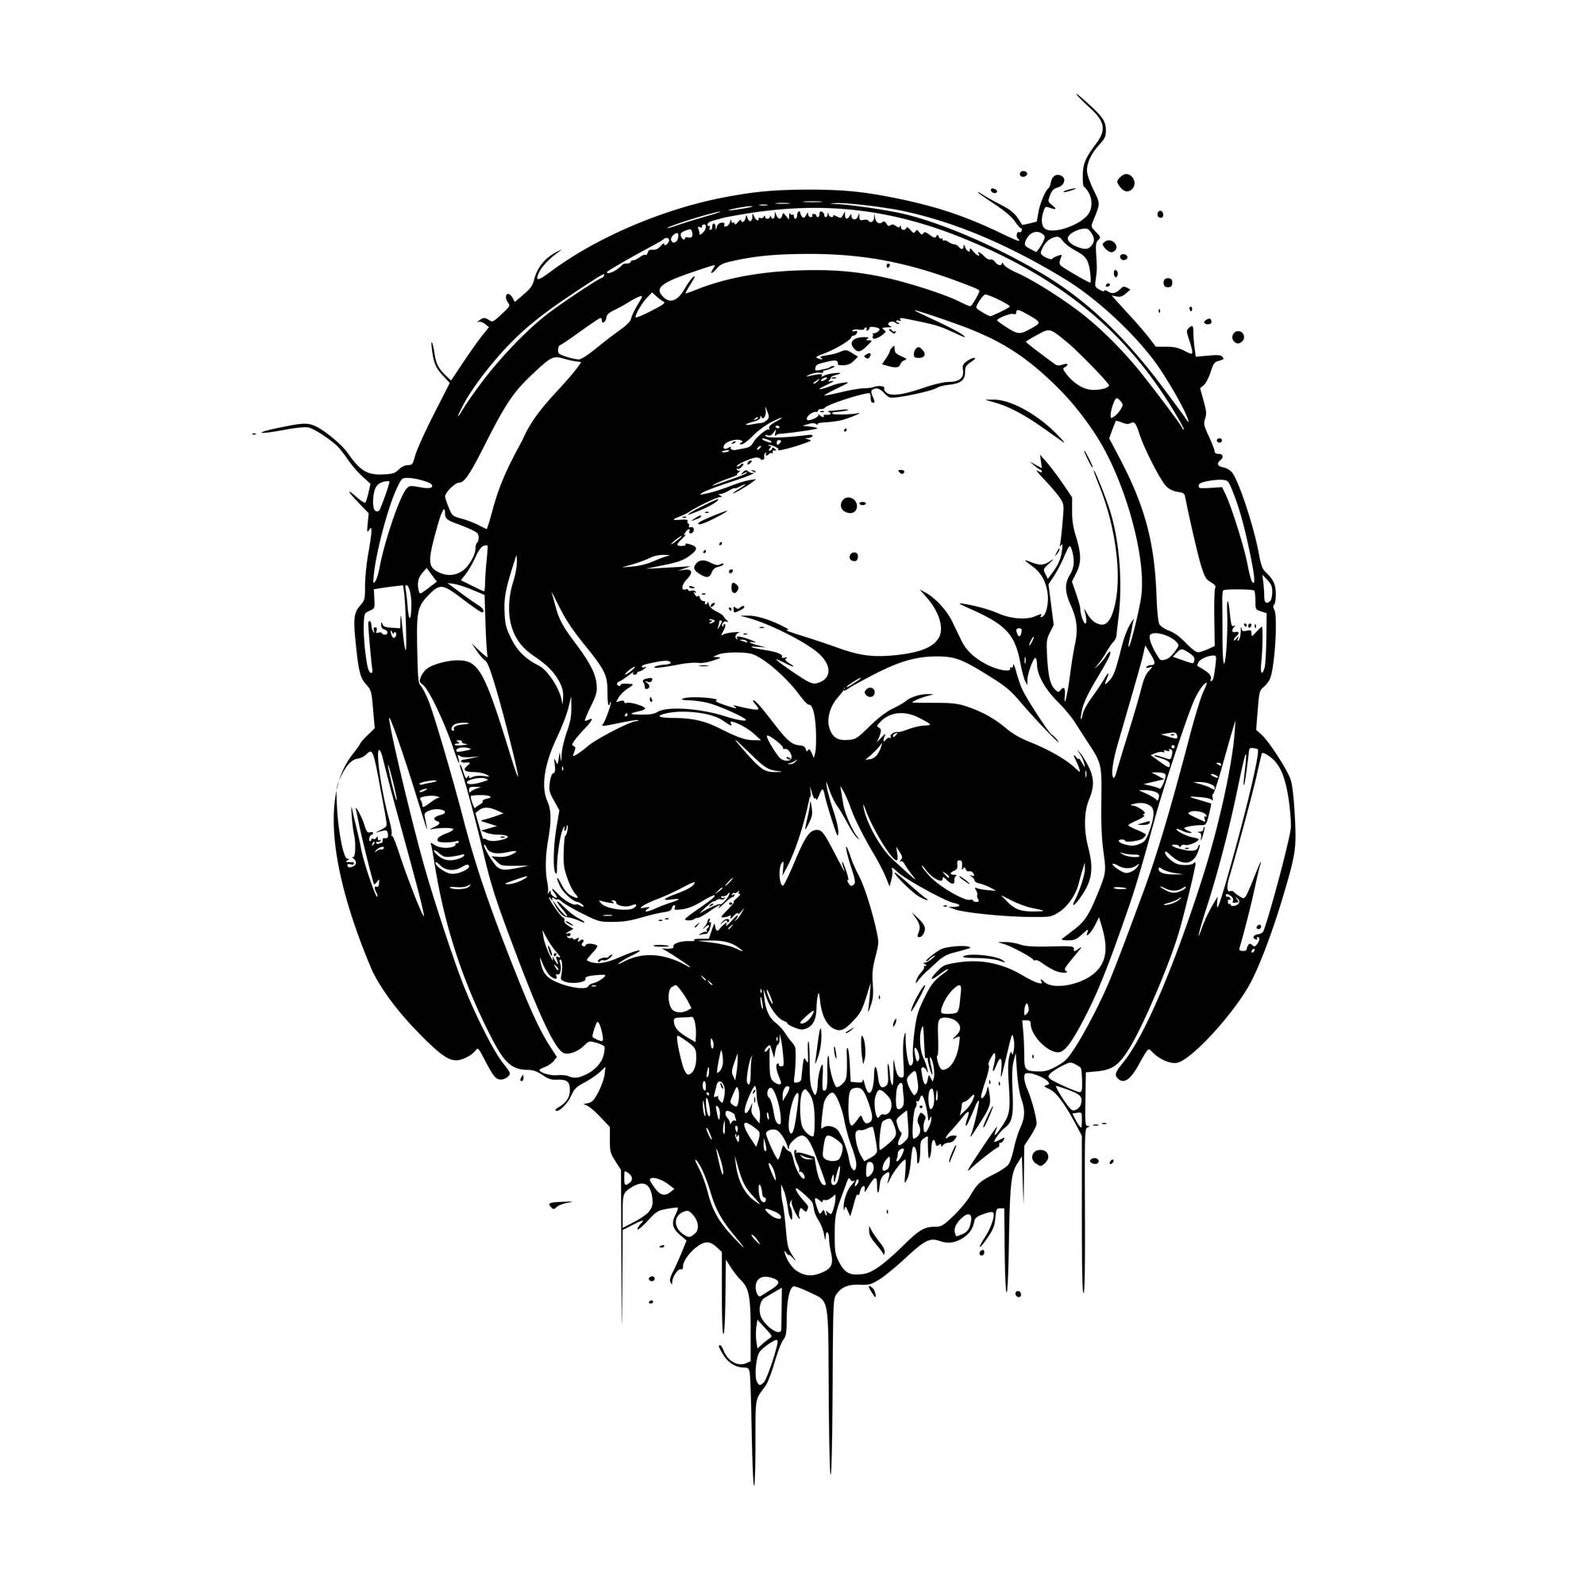 Skull Dj Headphones Skull Headphone Logo Dj Disc Jockeyskull Headset